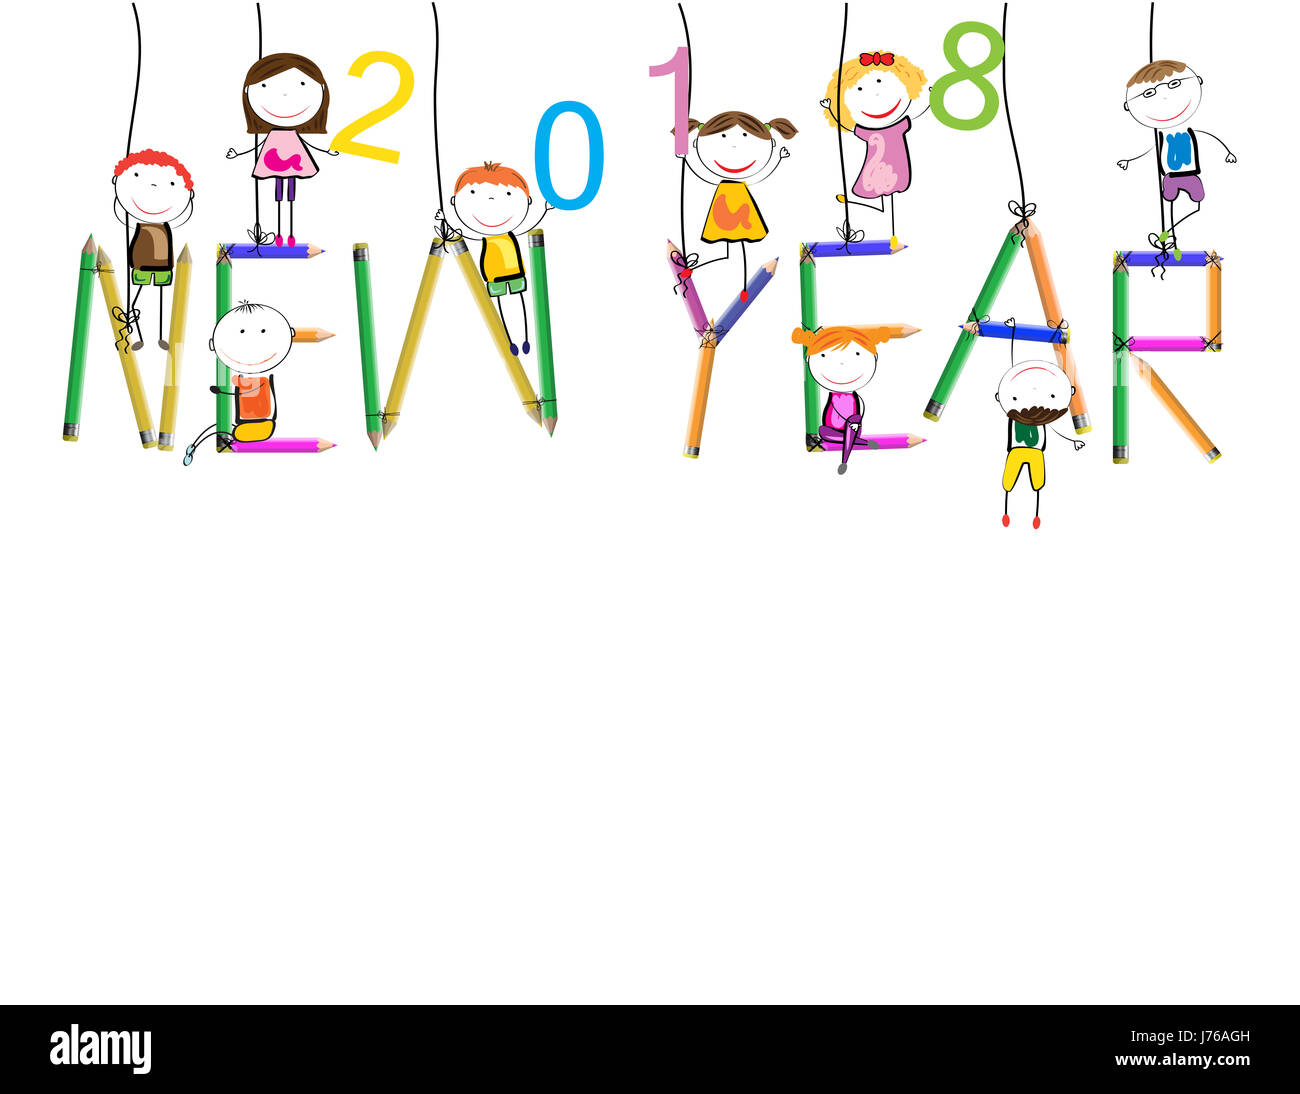 Tarjetas coloridas para el Año Nuevo 2018 con niños felices Foto de stock